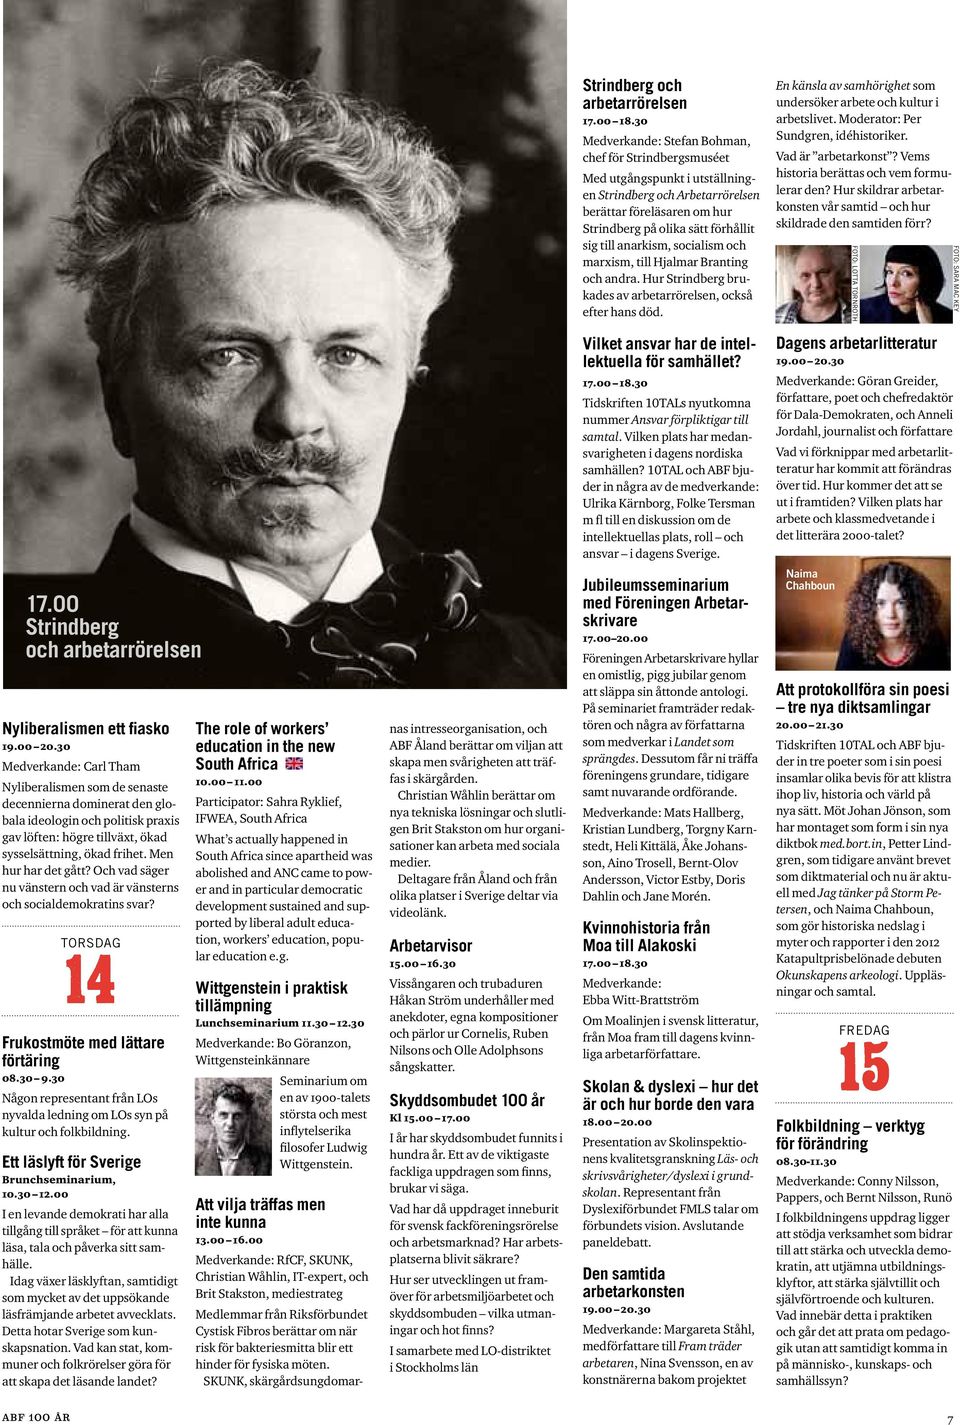 anarkism, socialism och marxism, till Hjalmar Branting och andra. Hur Strindberg brukades av arbetarrörelsen, också efter hans död.